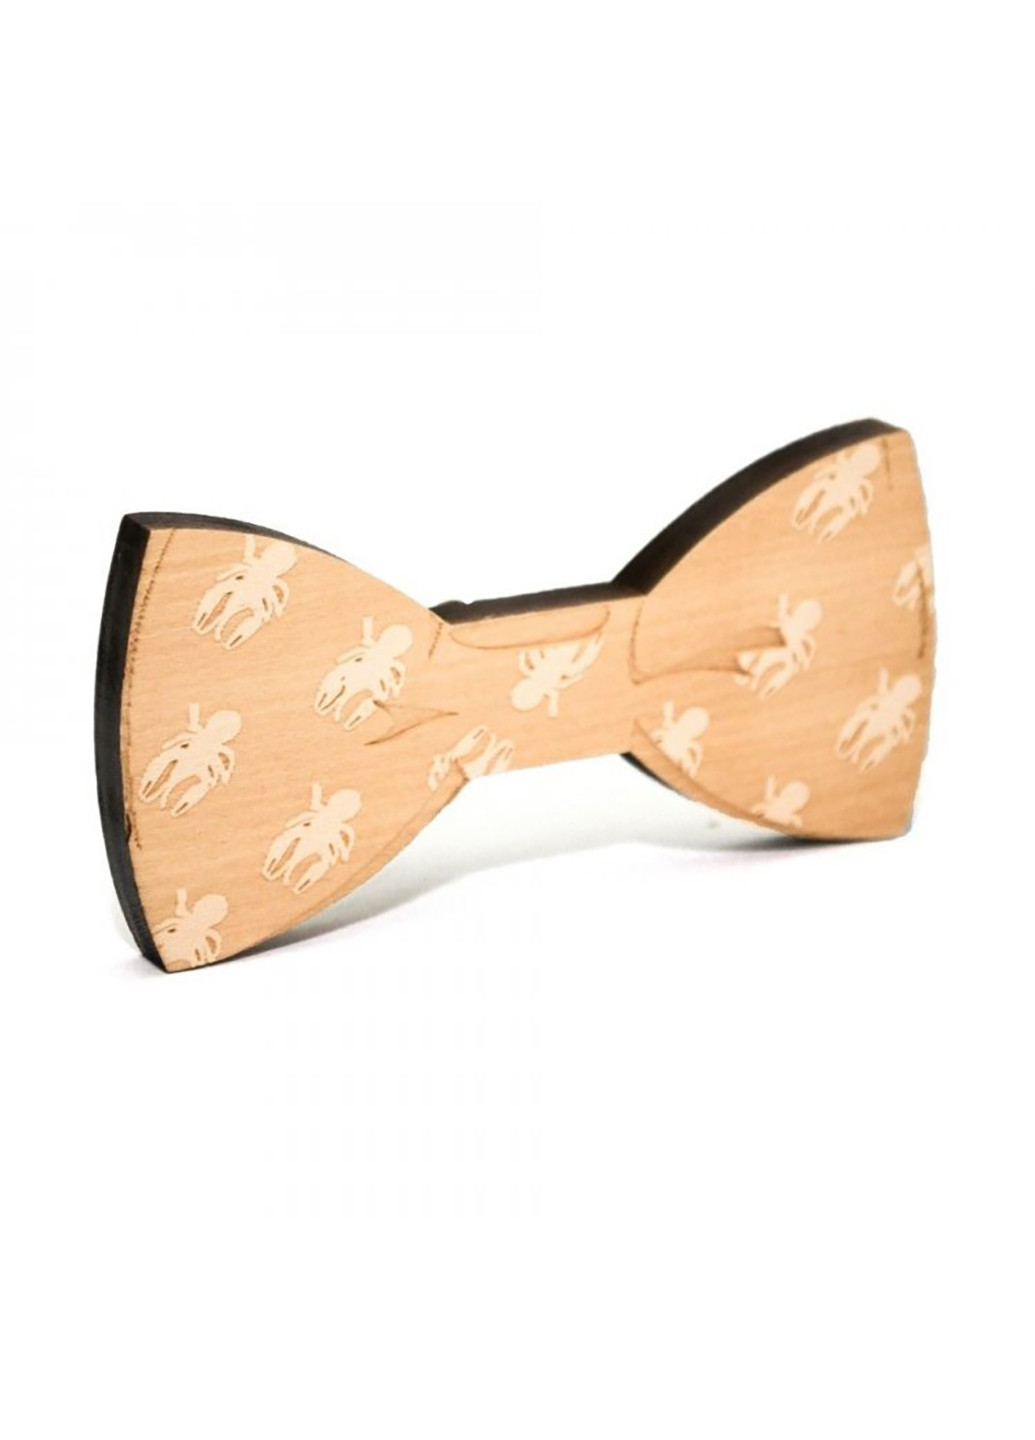 Мужской галстук бабочка 5х10 см Handmade (252133068)